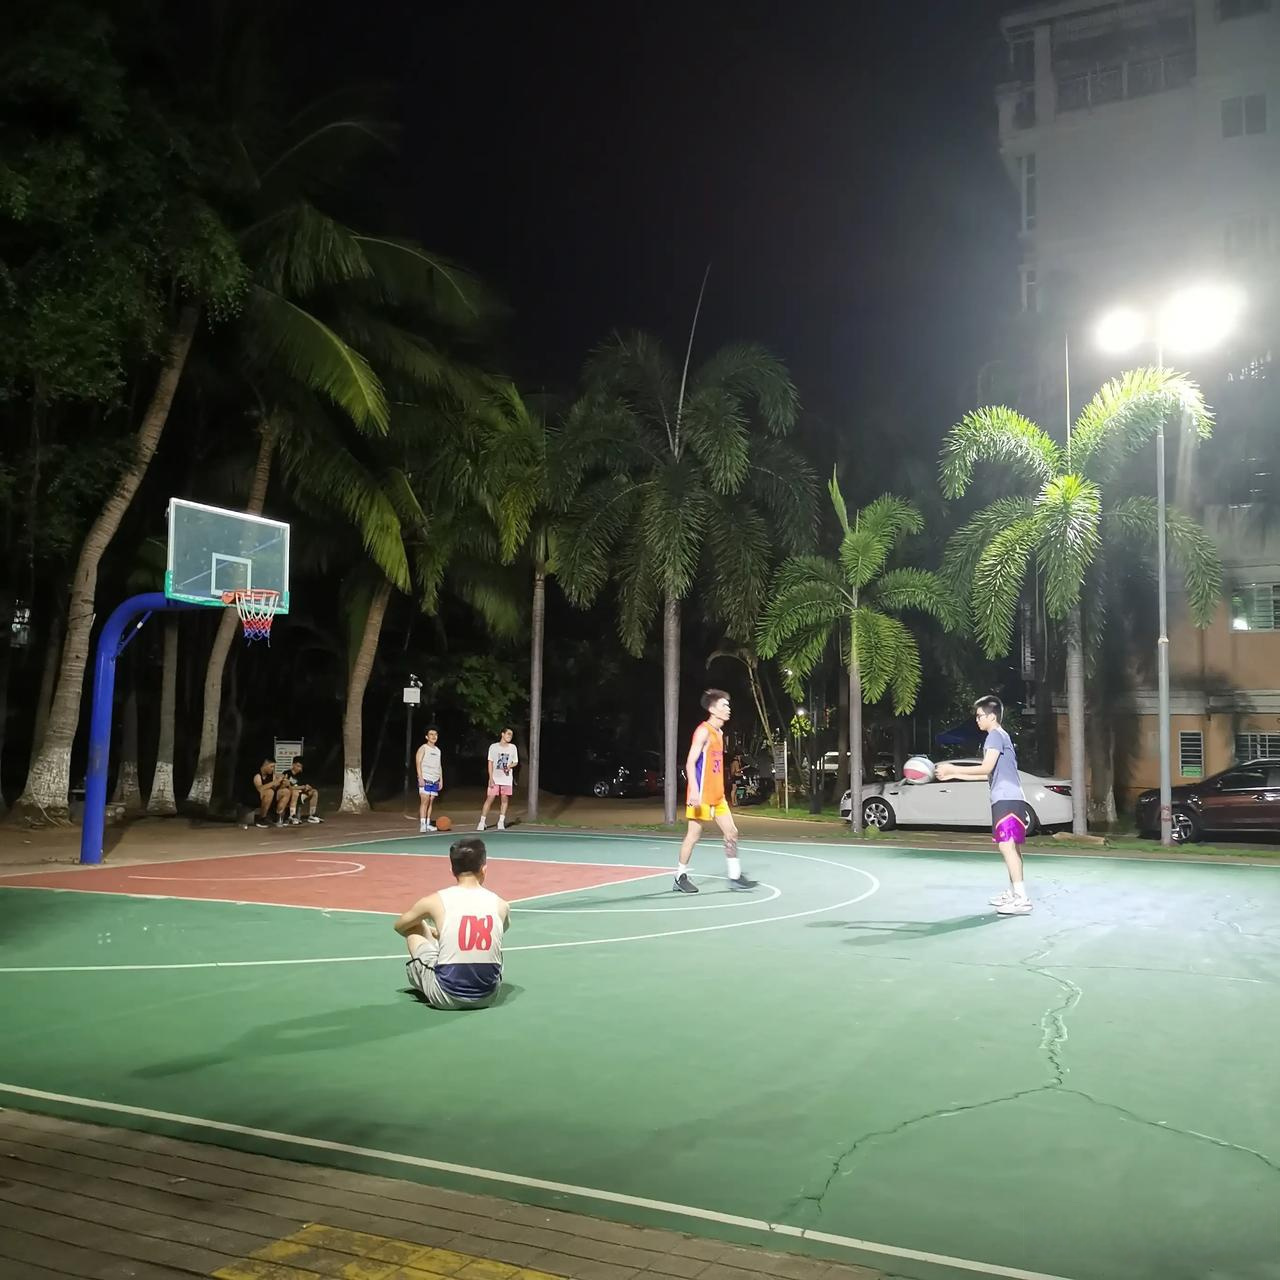 打篮球照片真实晚上图片